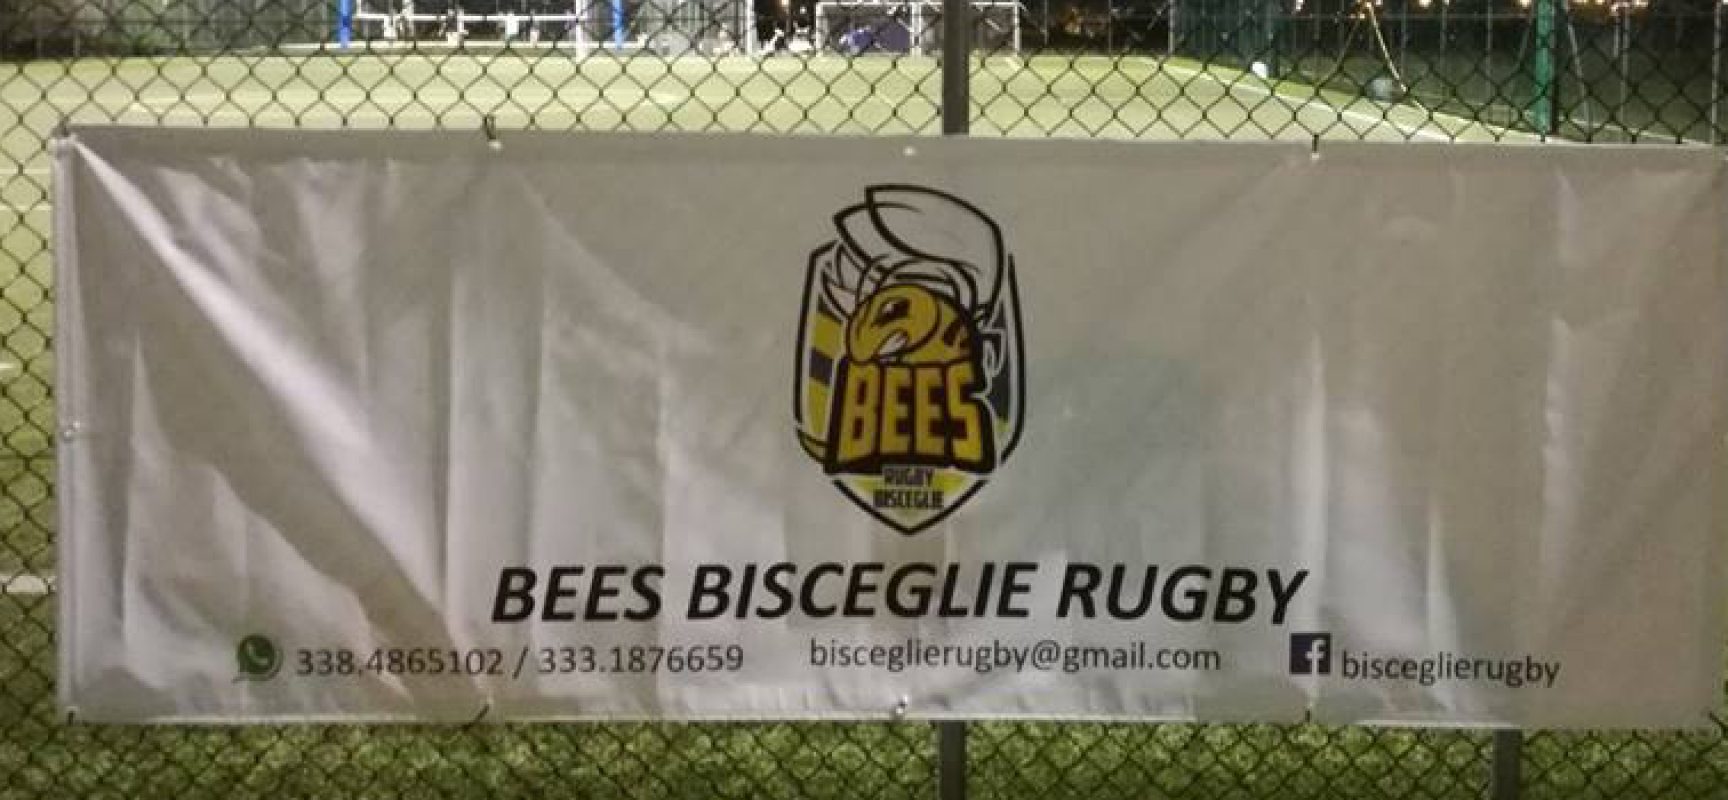 Rugby a Bisceglie: sabato torneo giovanile in casa dei Bees, lunedì convegno al II circolo